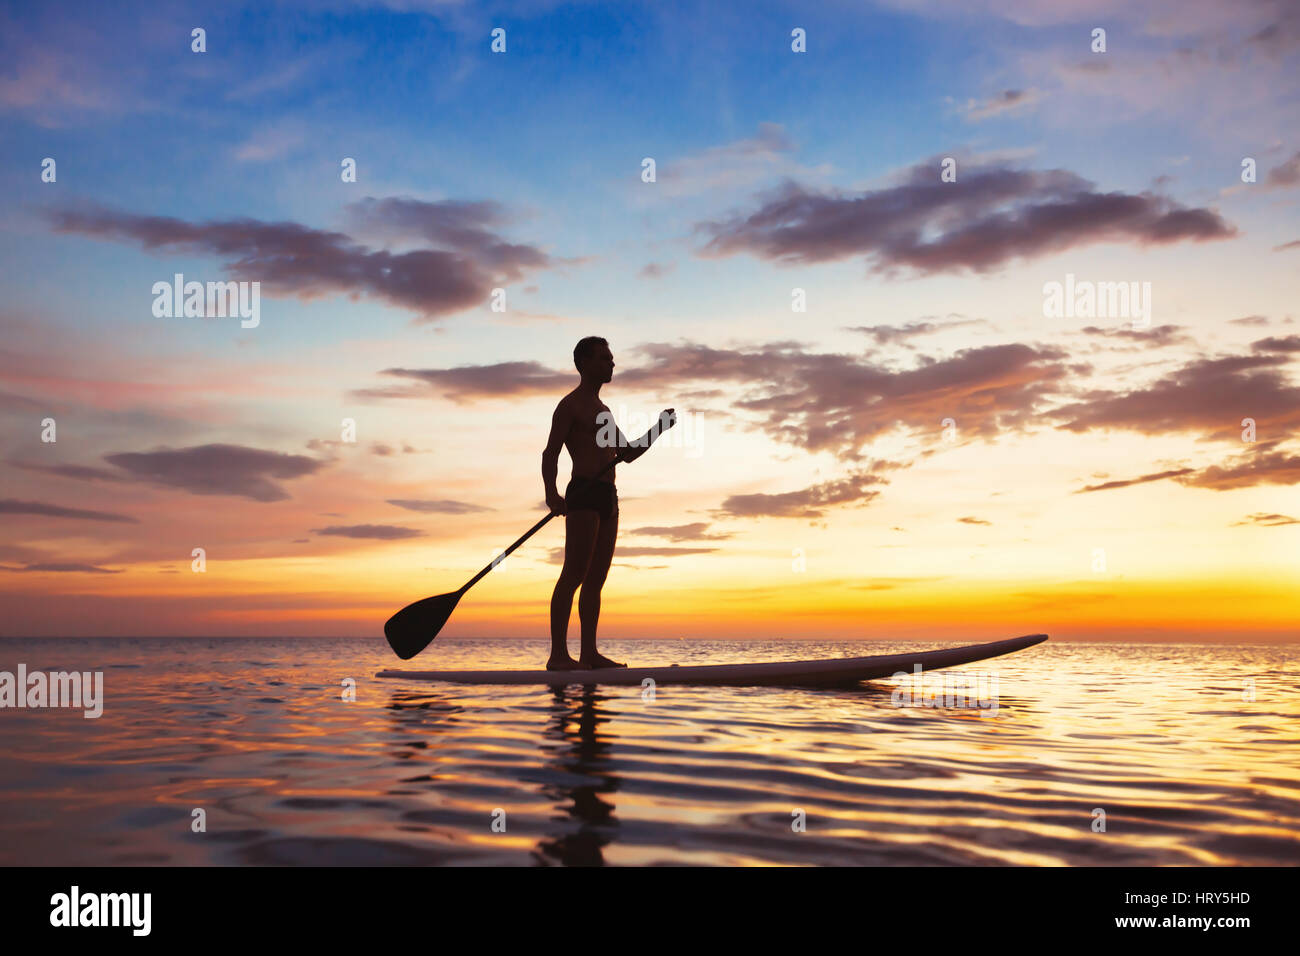 Conseil permanent de la palette, l'activité de loisirs de plage, belle silhouette of man au coucher du soleil Banque D'Images